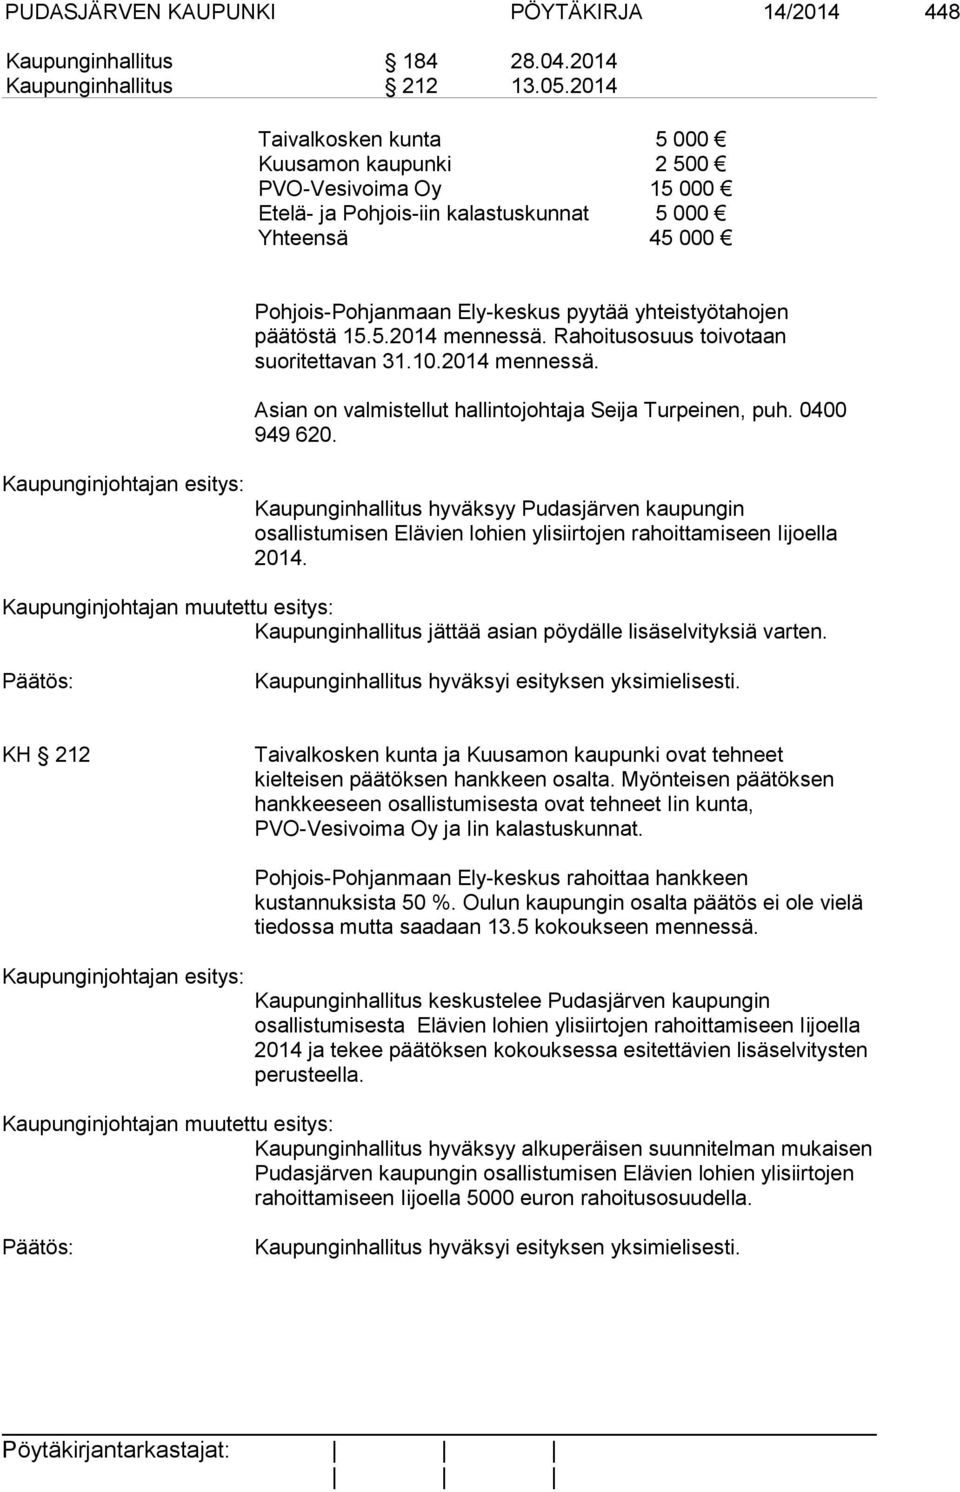 15.5.2014 mennessä. Rahoitusosuus toivotaan suoritettavan 31.10.2014 mennessä. Asian on valmistellut hallintojohtaja Seija Turpeinen, puh. 0400 949 620.